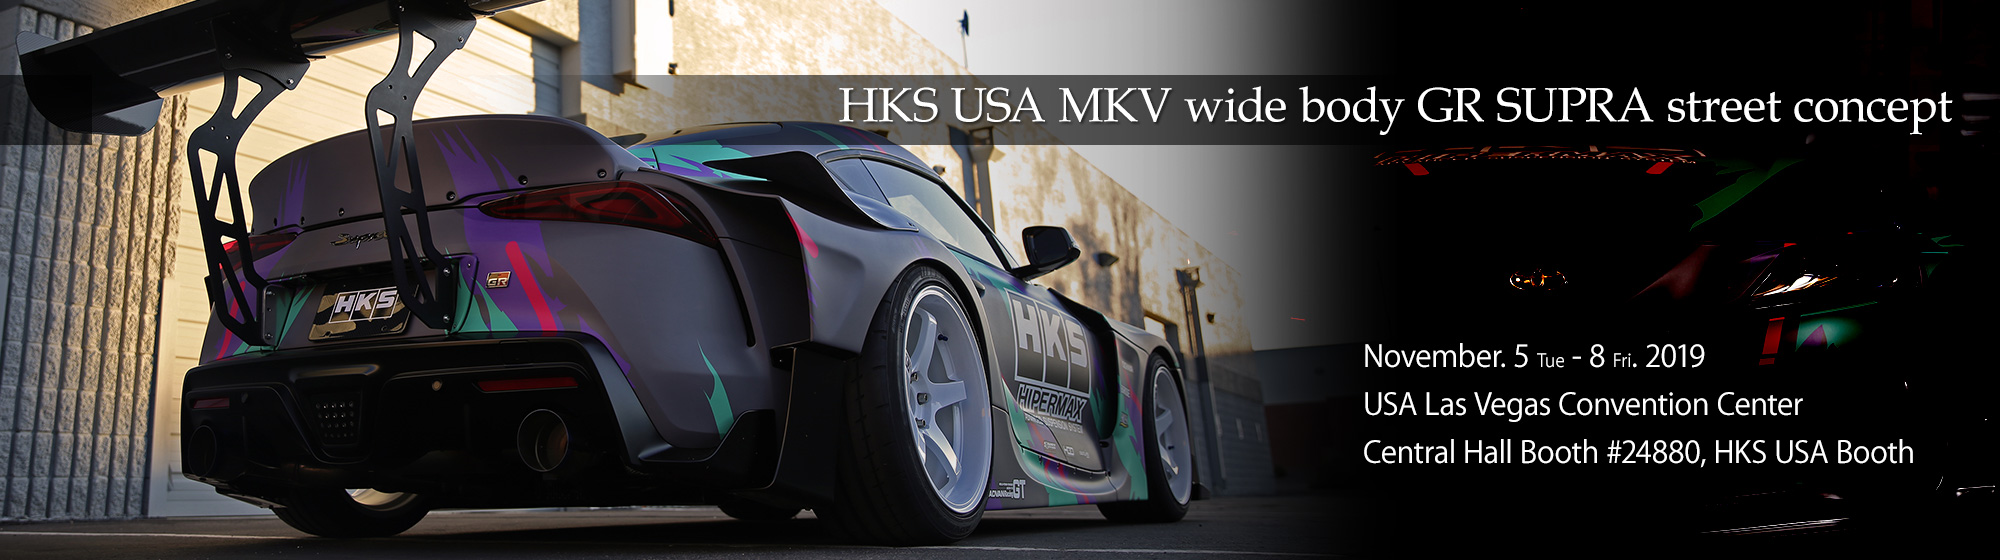 HKS USA MKV wide body GR SUPRA street concept